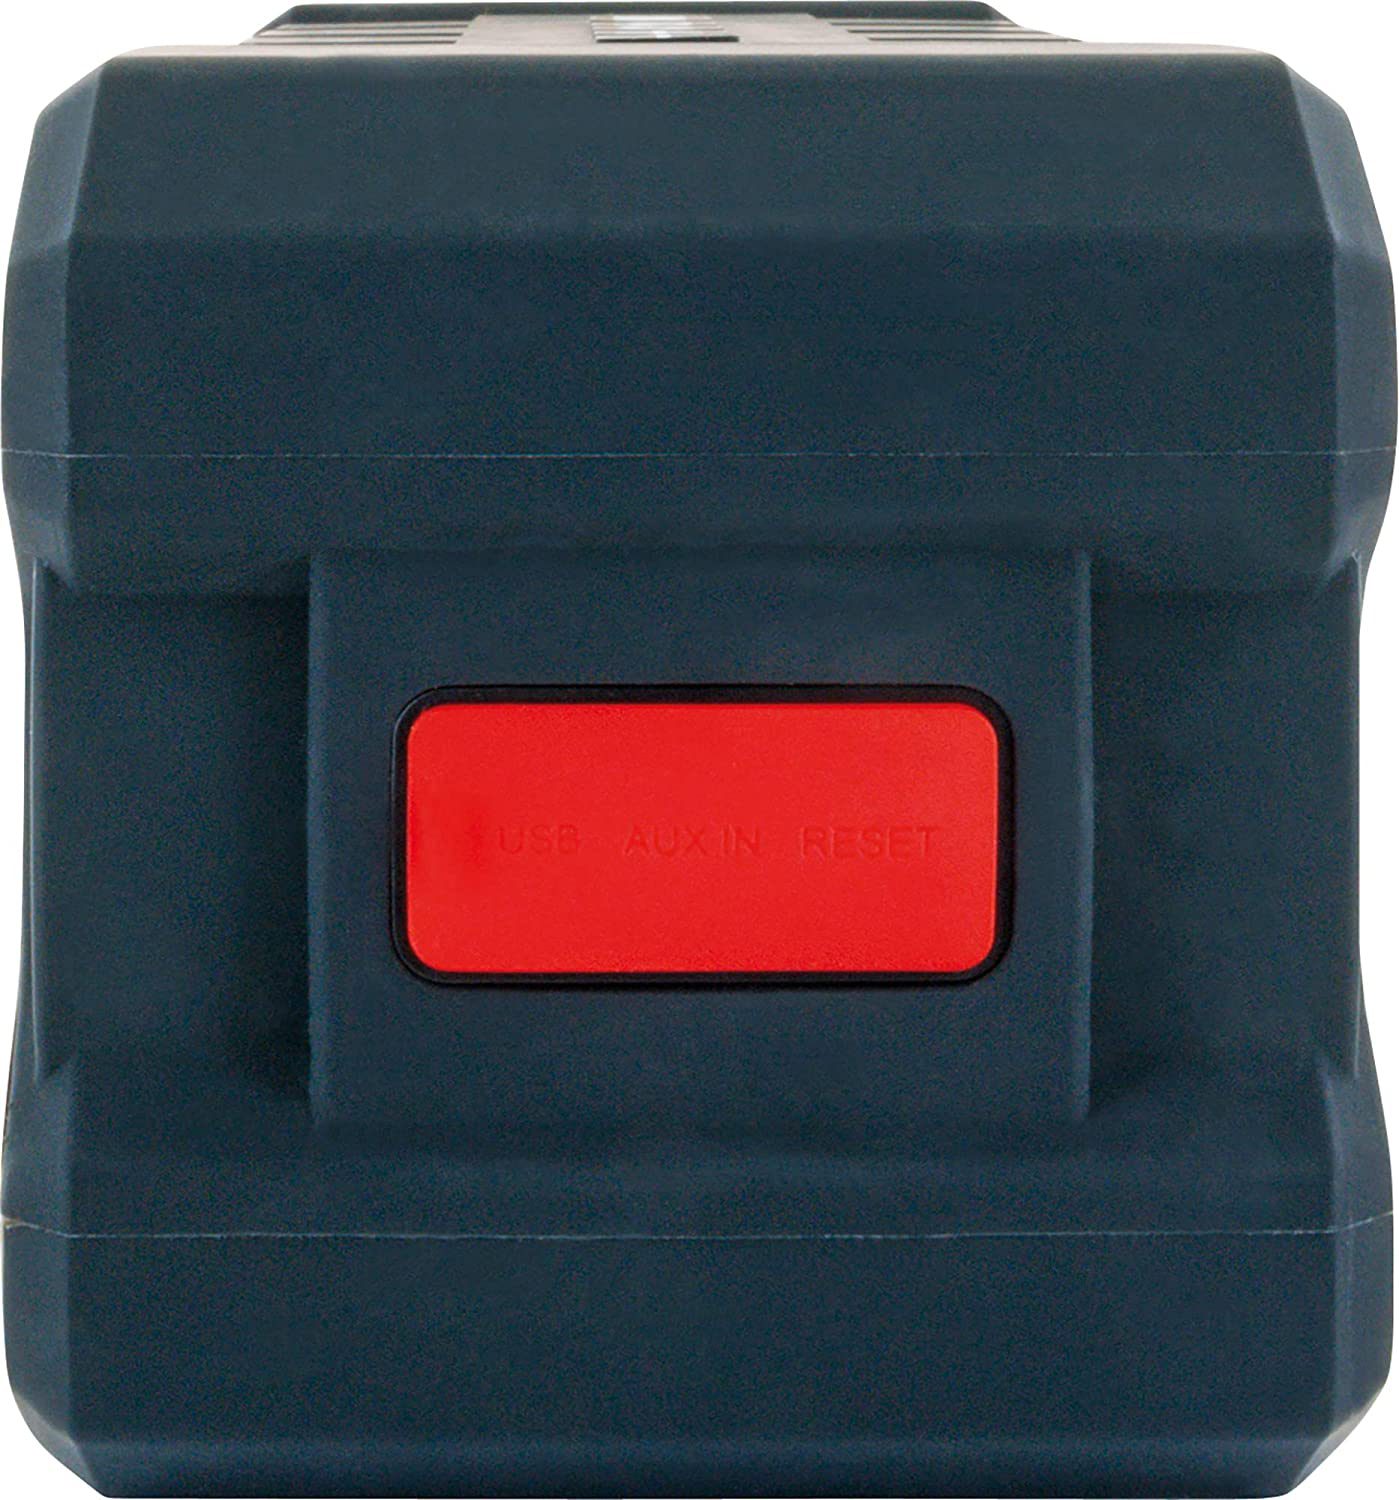 SCHWAIGER -WKLS100 W, zertifiziert Lautsprecher 511- Schwarz/Gelb) x 6 Bluetooth (2 IP67